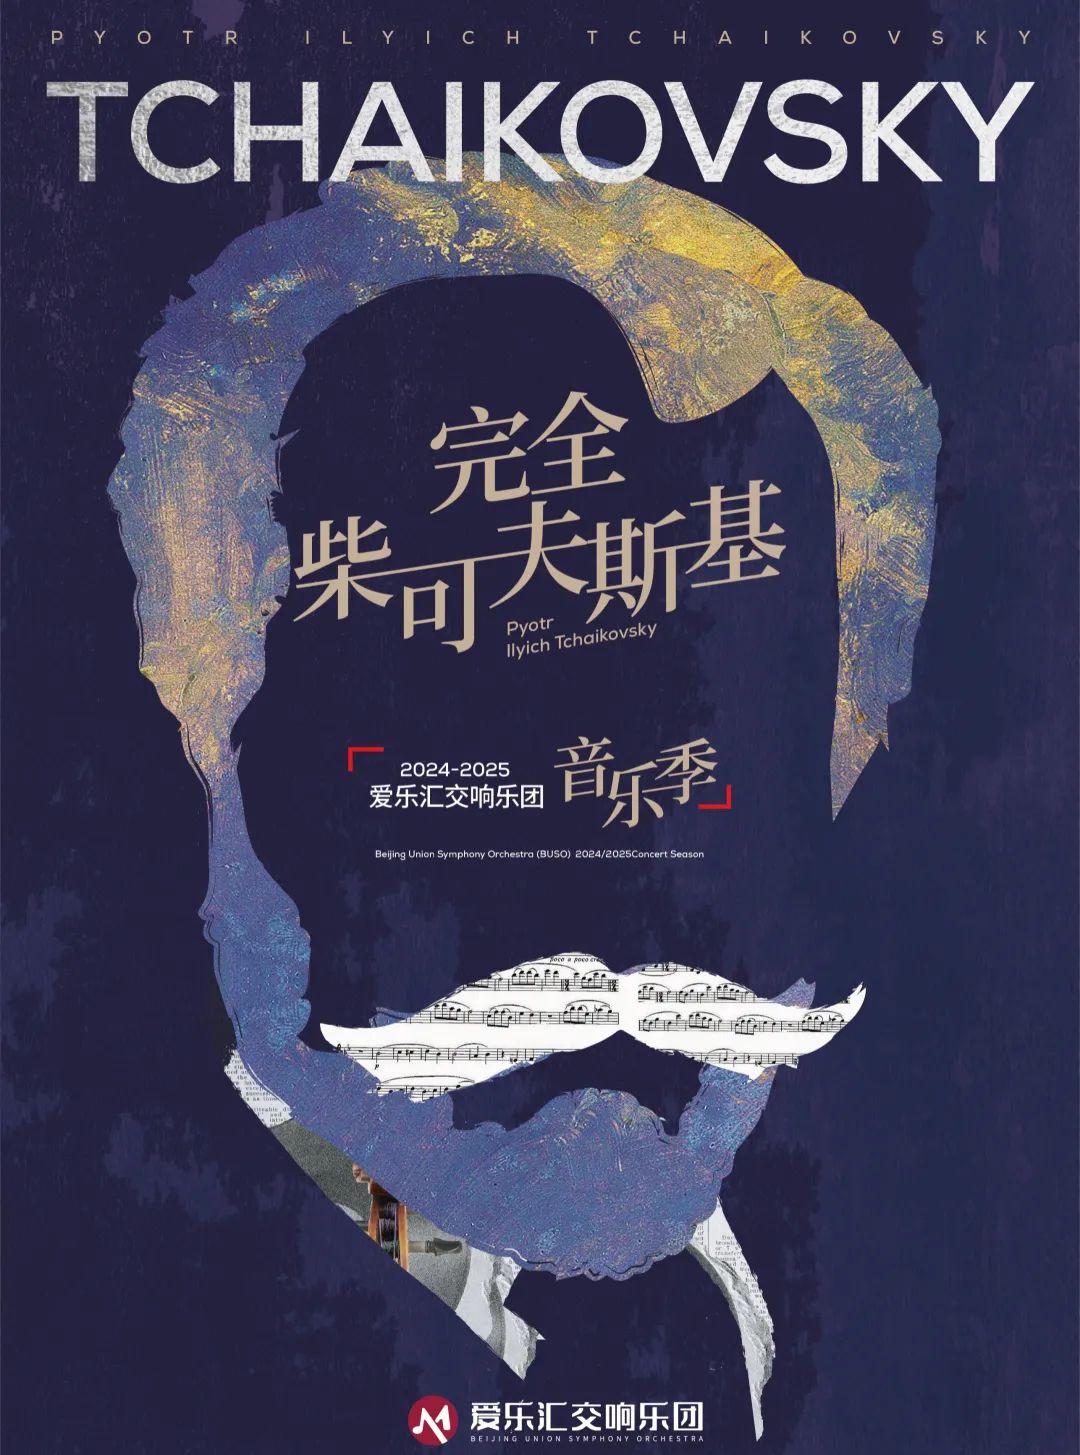 燕幽叹！关于北京的「音乐戏剧」青兰赋重新定义国乐潮流